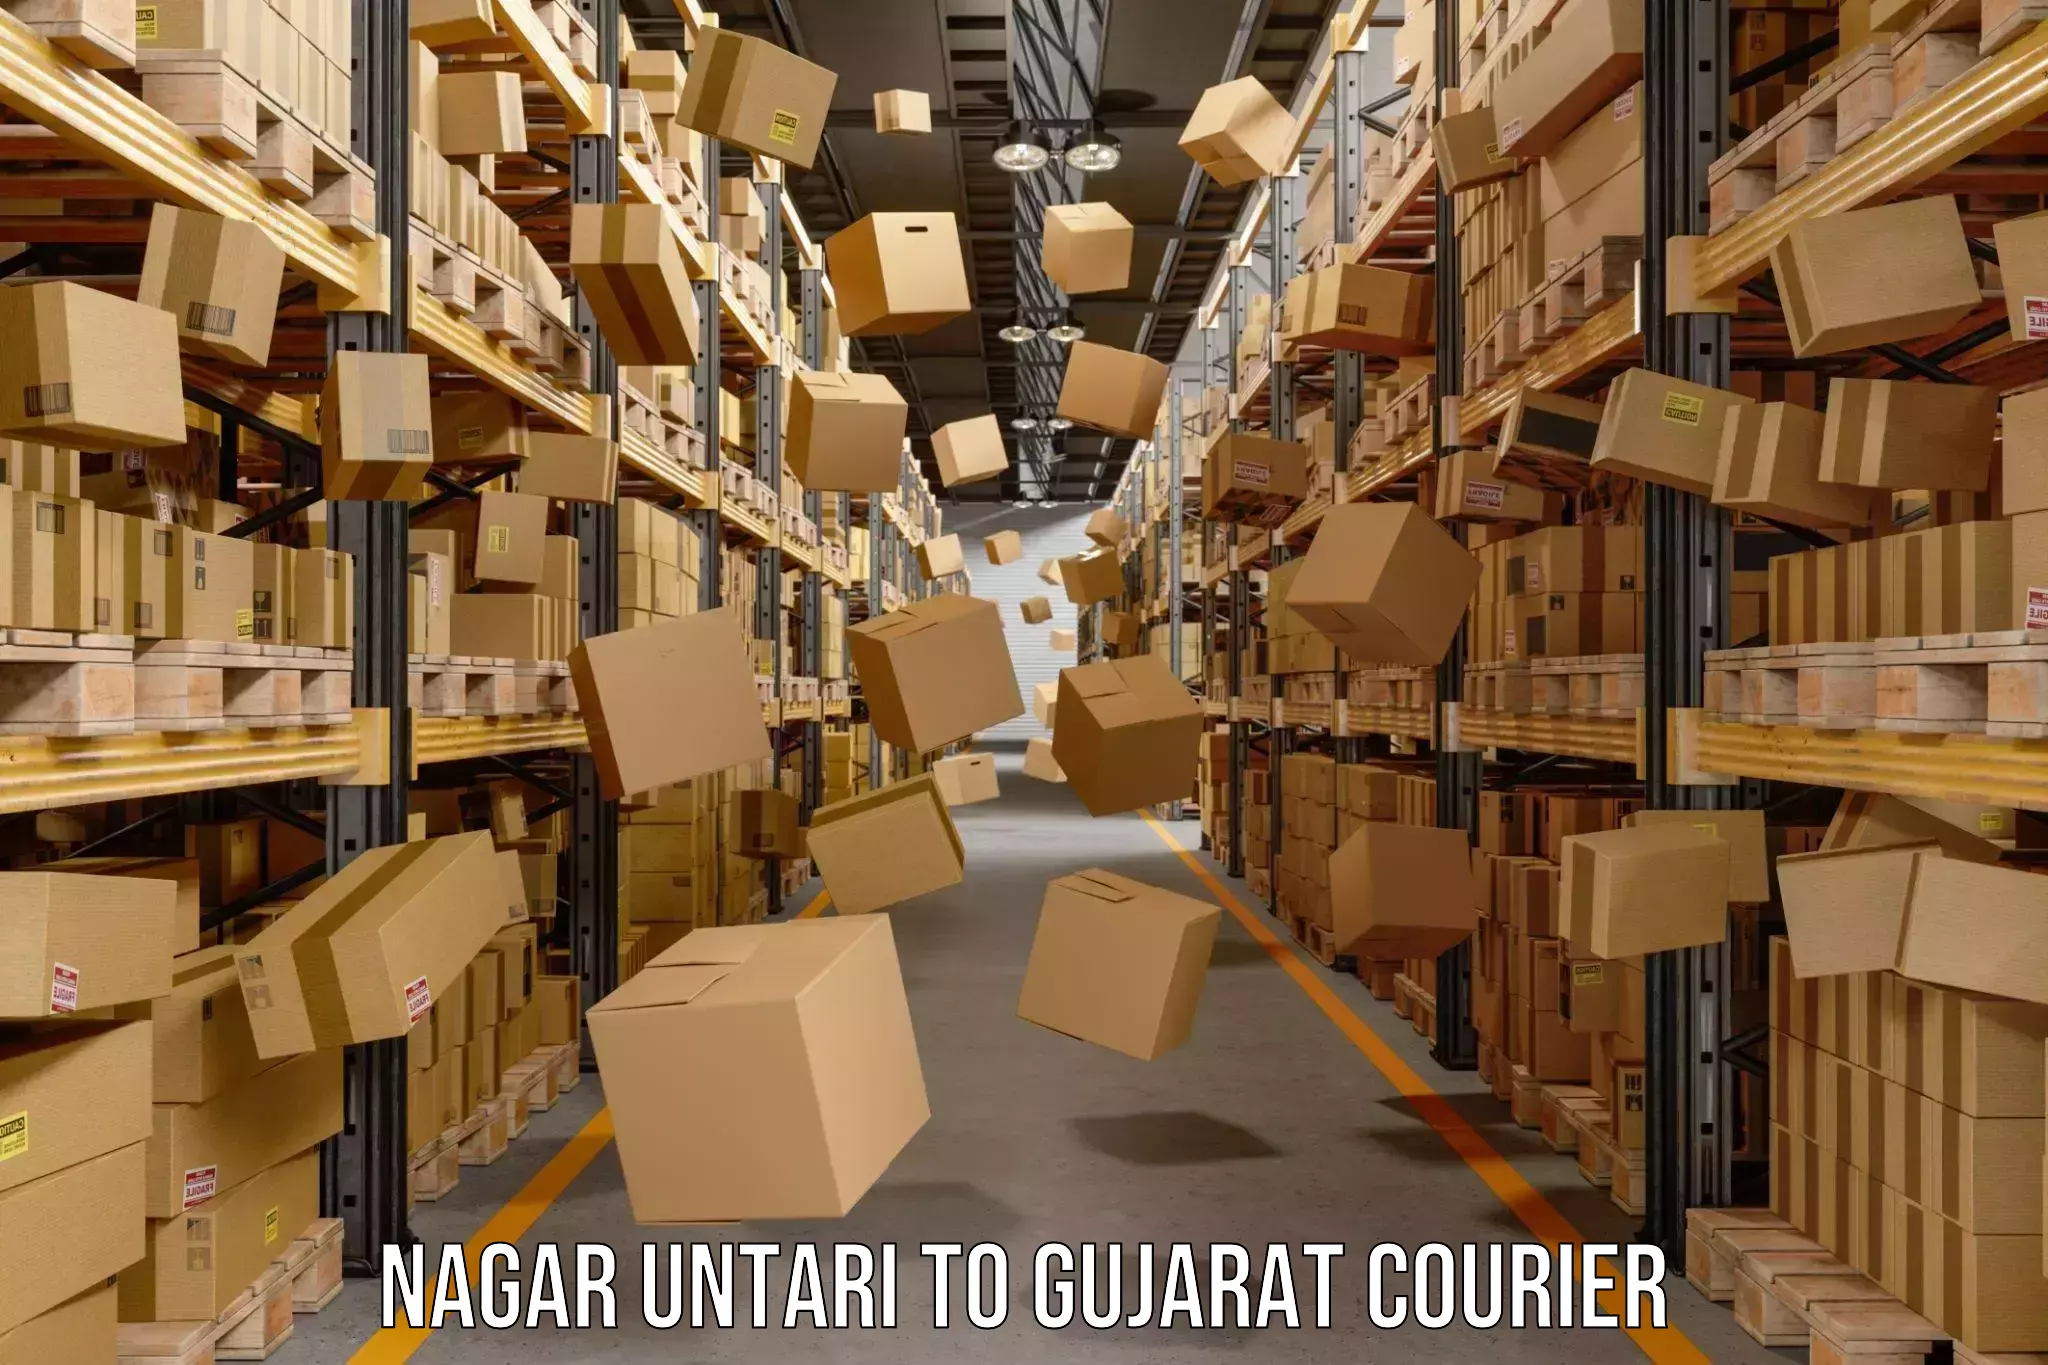 Personal parcel delivery Nagar Untari to Vyara